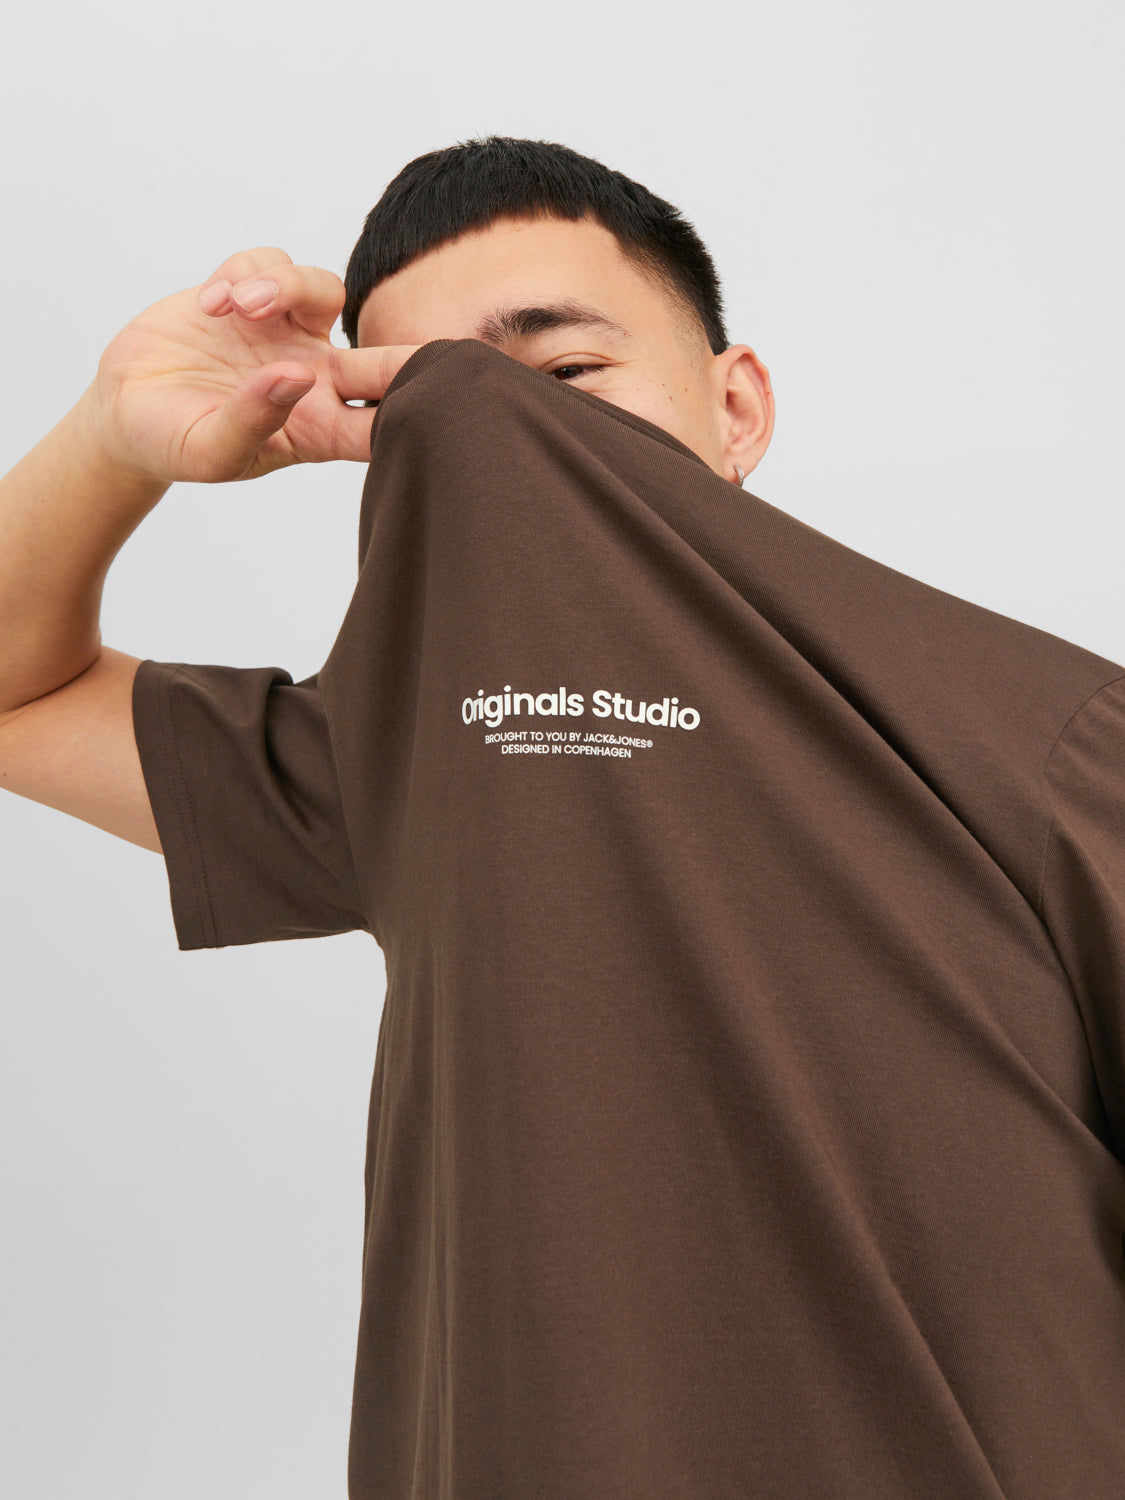 JORVESTERBRO T-Shirt - Chocolate Brown